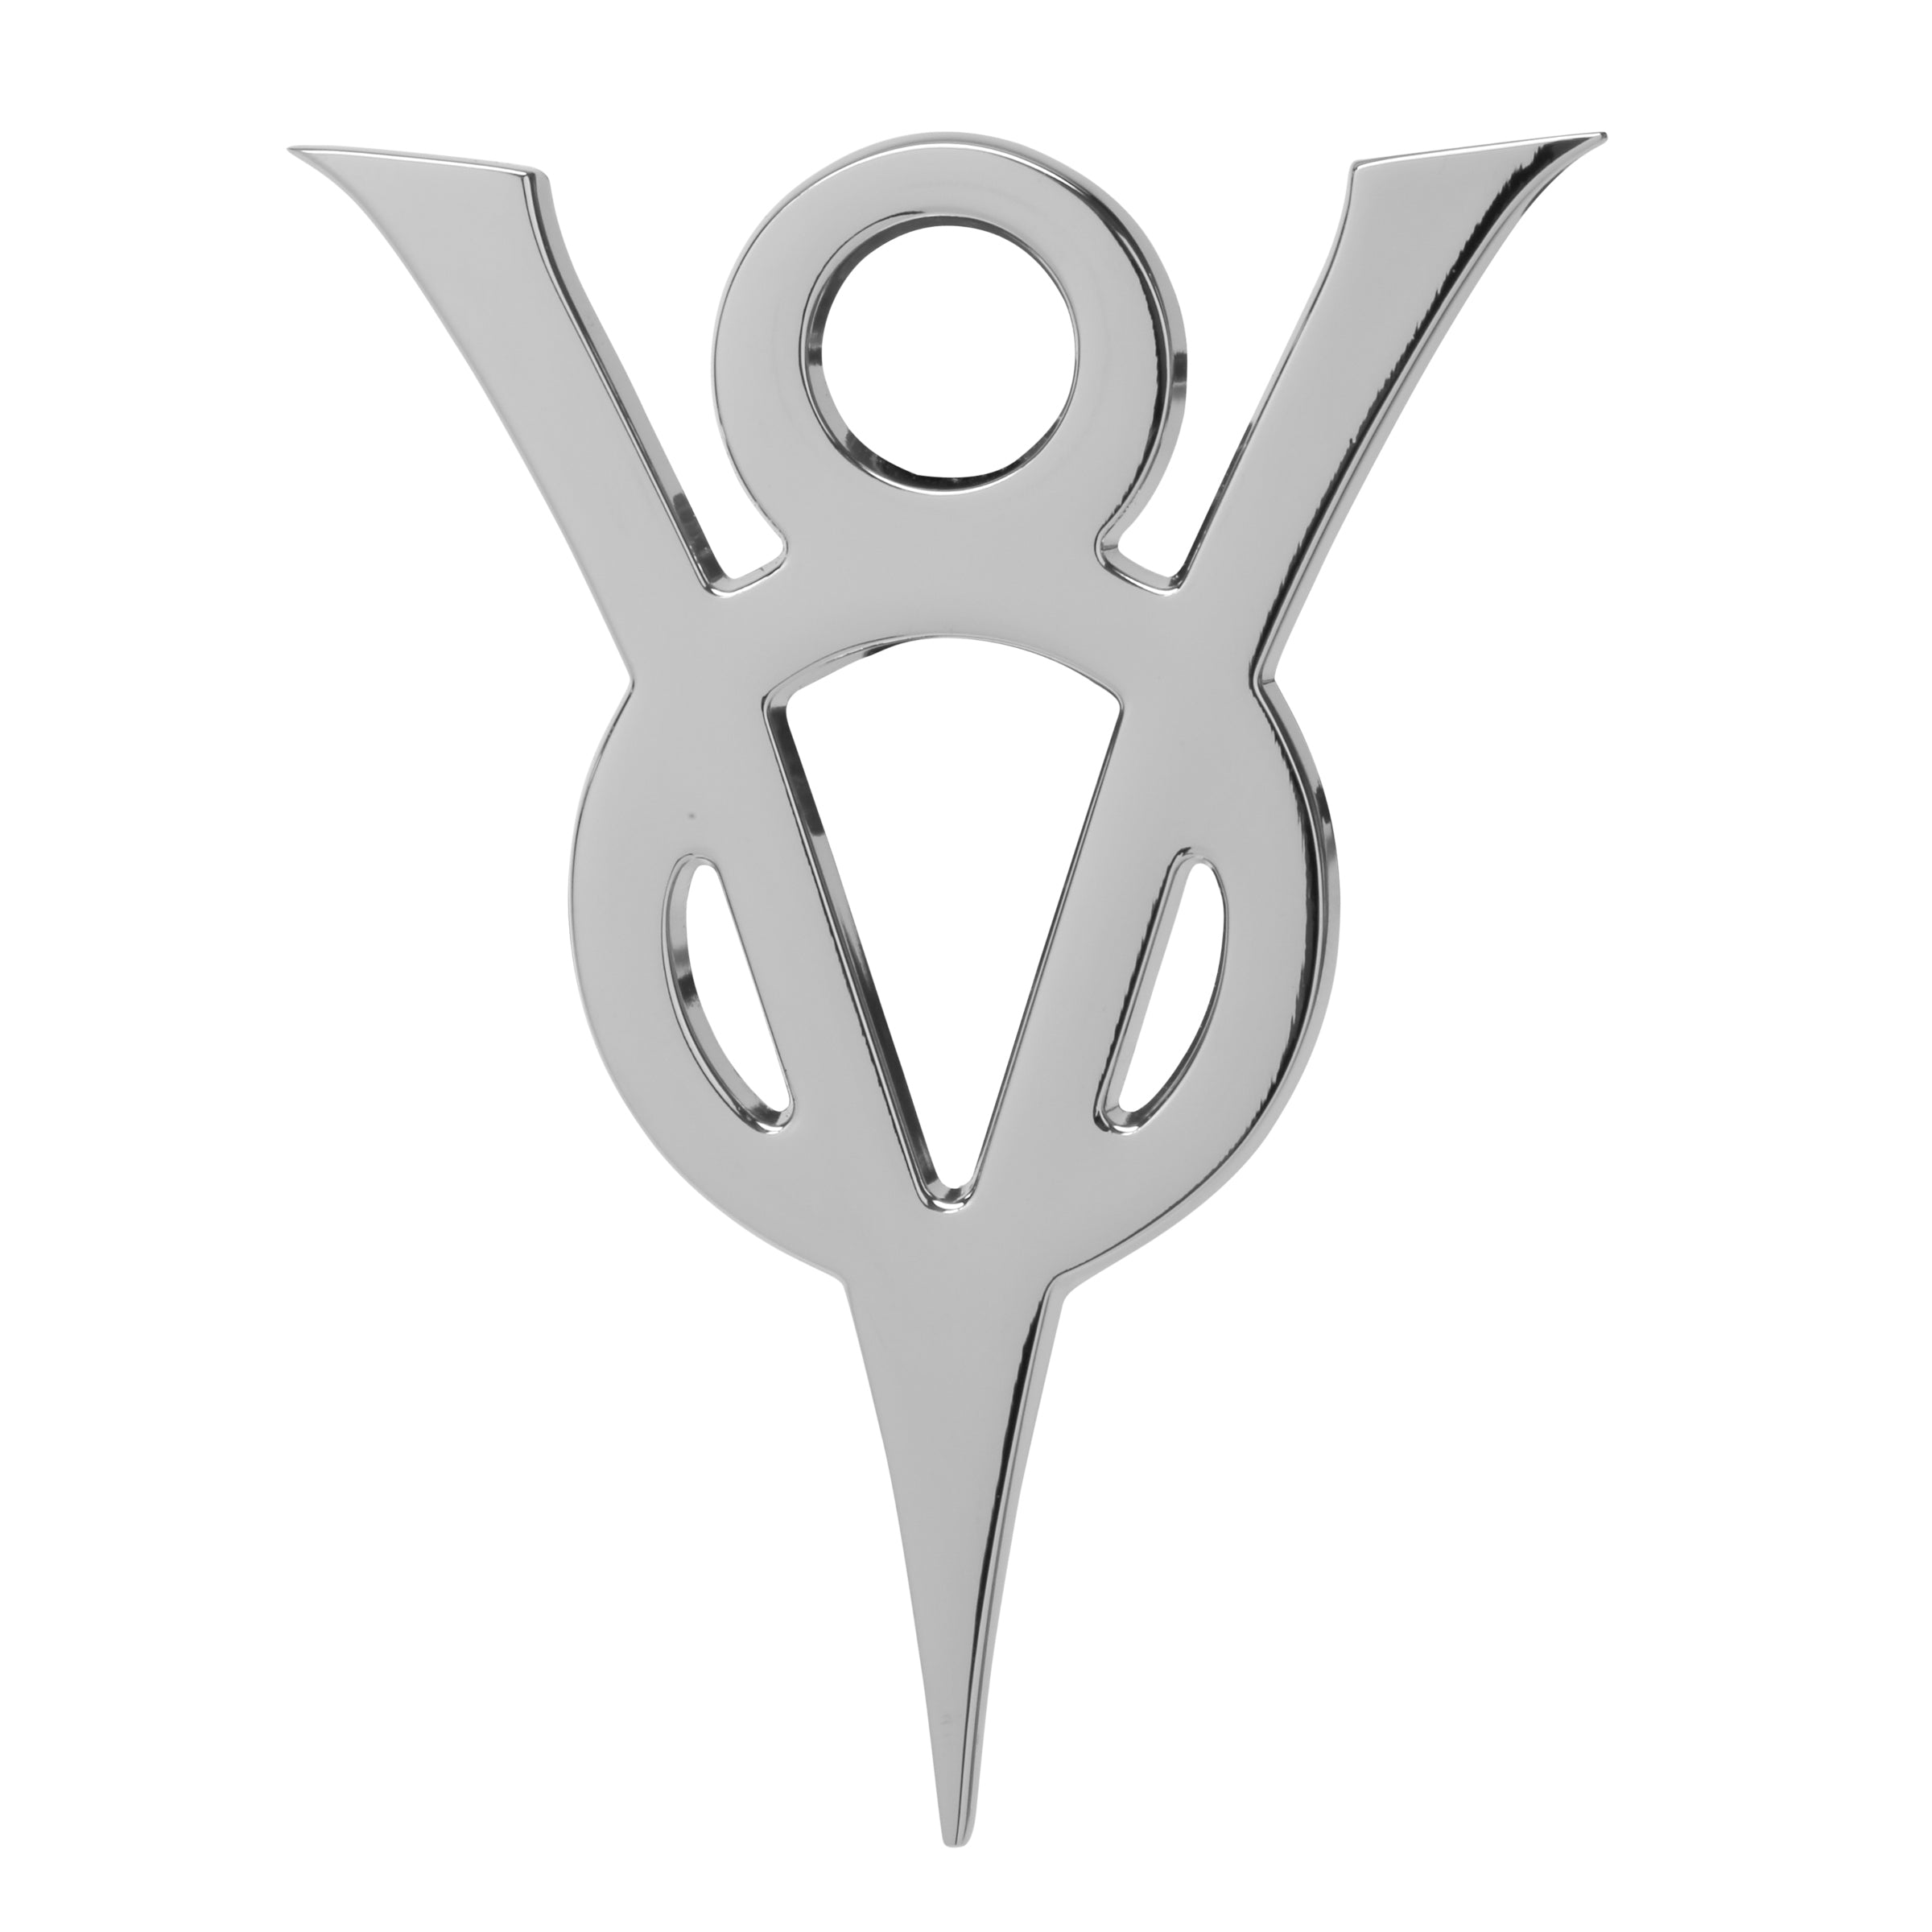 vintage ford v8 logo